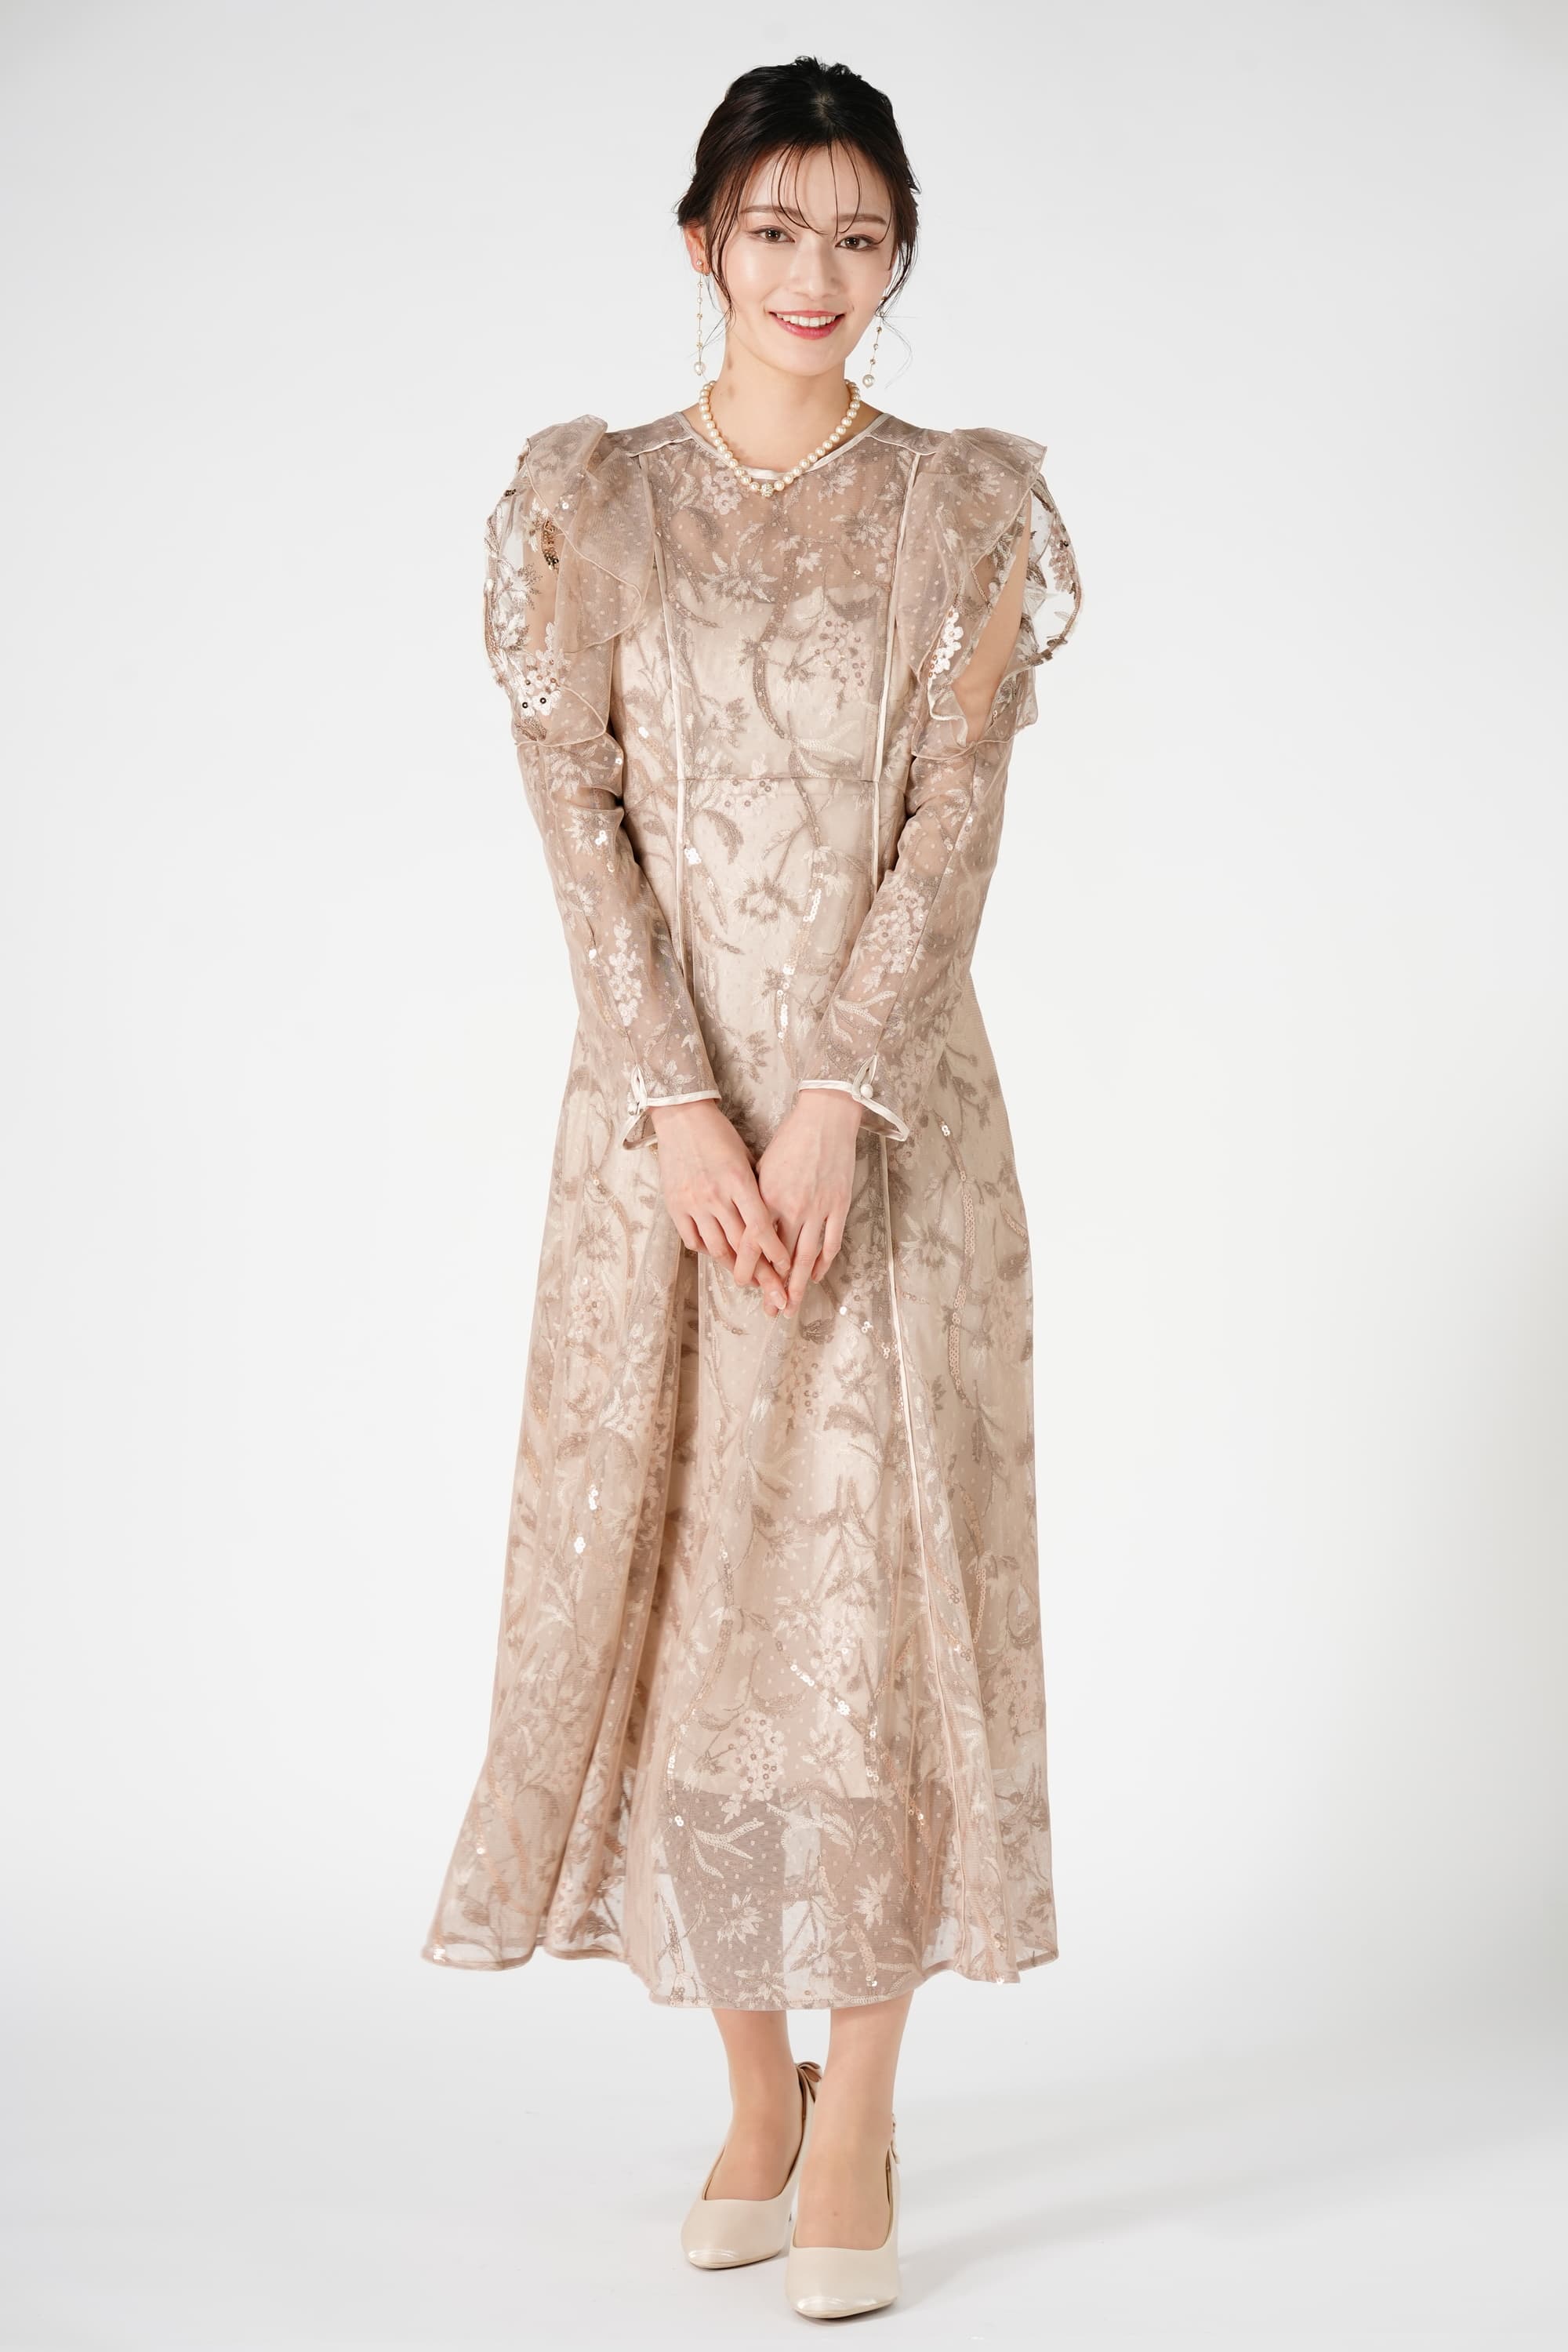 ラスト 限定 新品 SNIDEL レース刺繍ドレス ベージュ 1 (M)フォーマル/ドレス